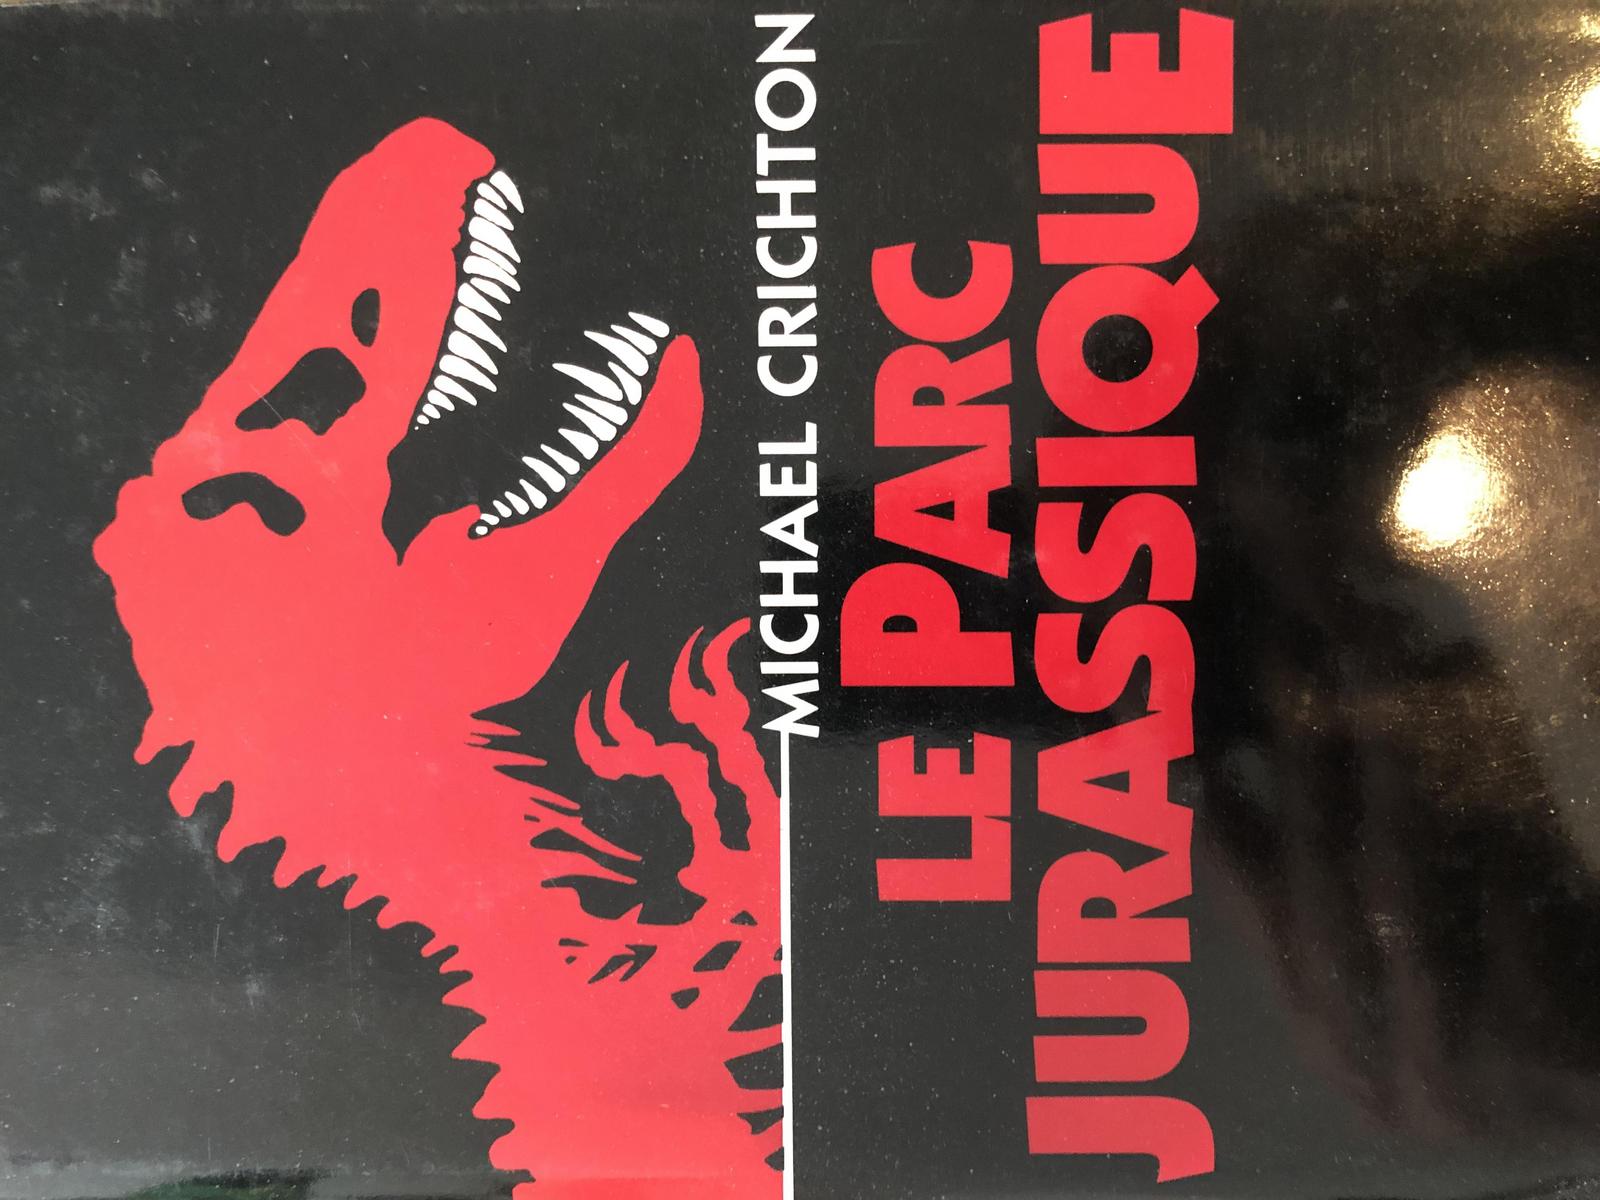 Michael Crichton: Le parc jurassique (French language, France Loisirs)